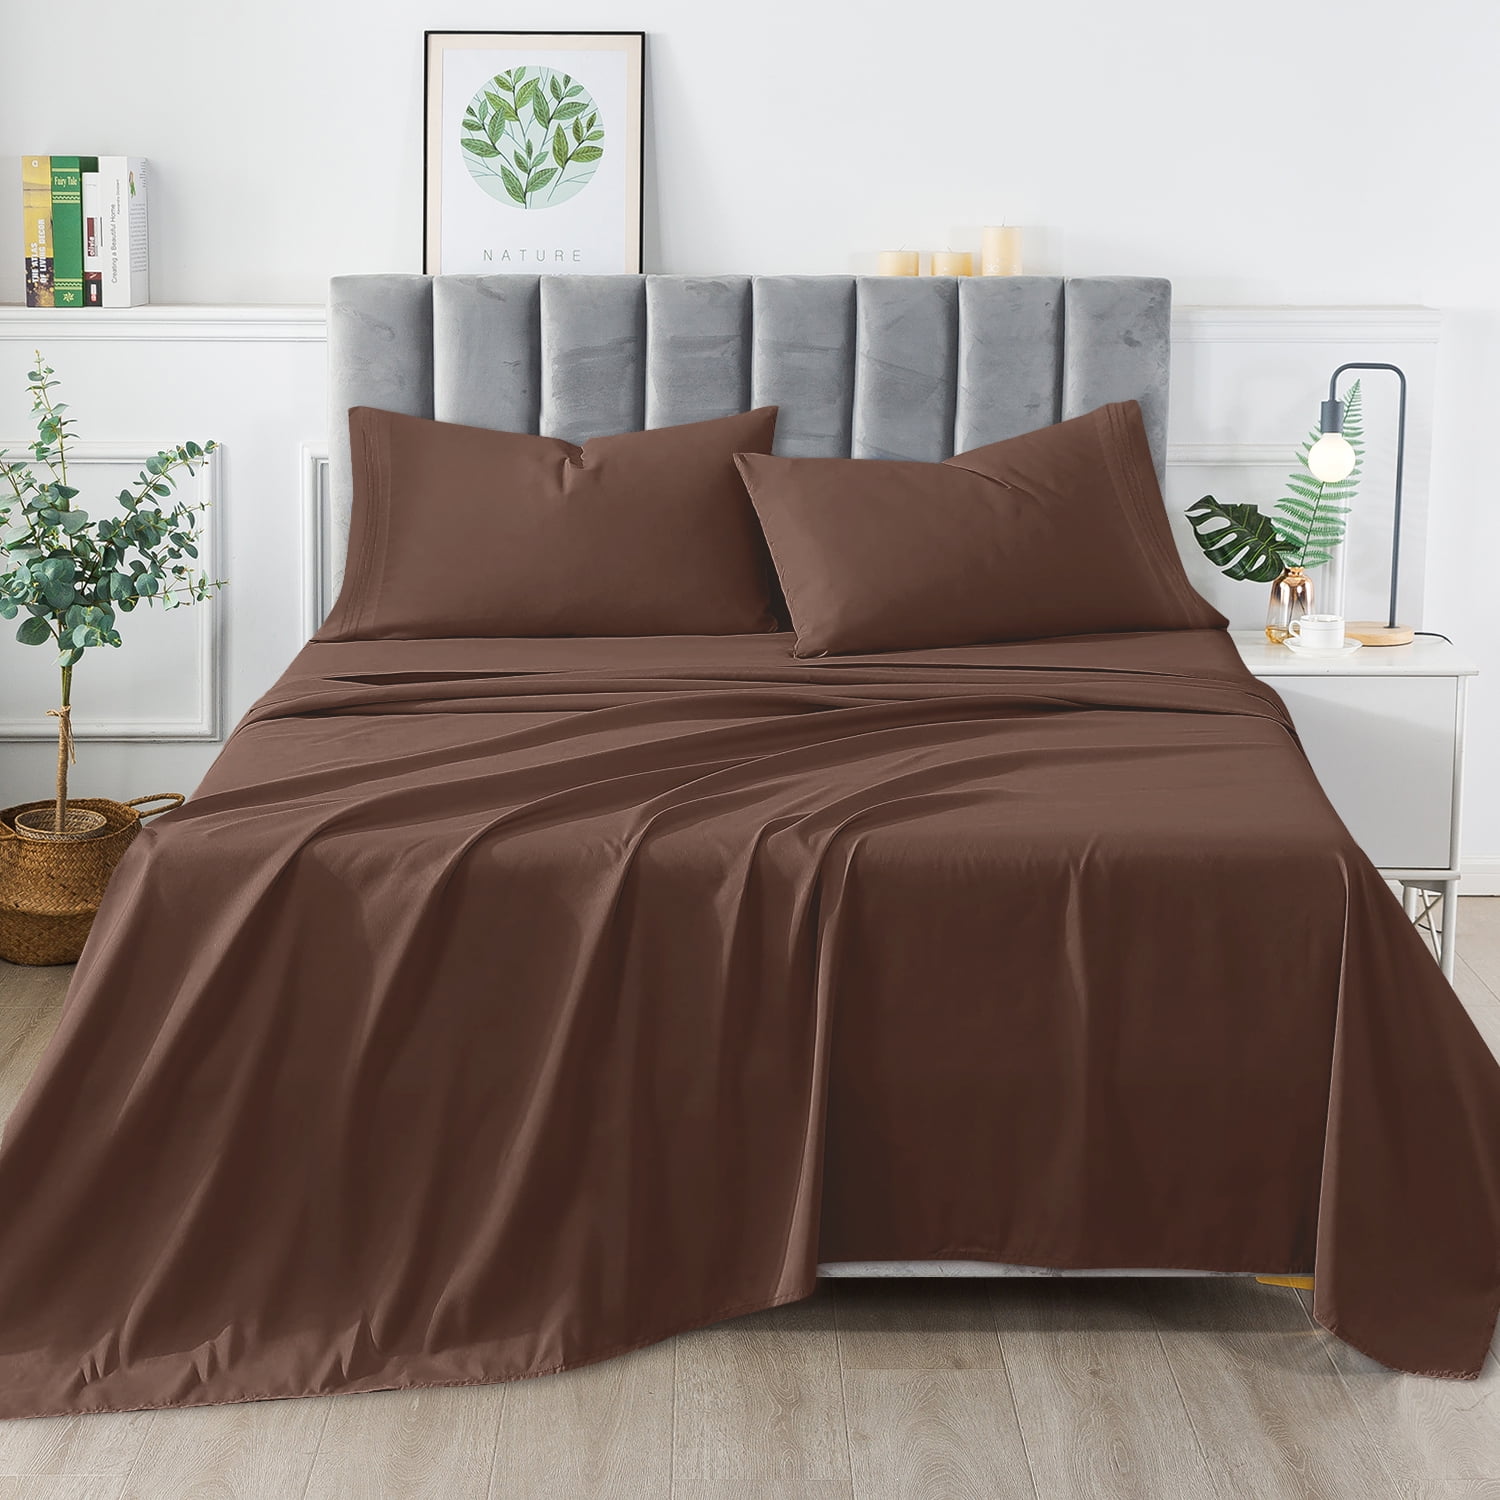 Details about   Comfort 1 Piece Bed Sheet Set Cotton Home Décor Dressing White Bedspread 144 TC 